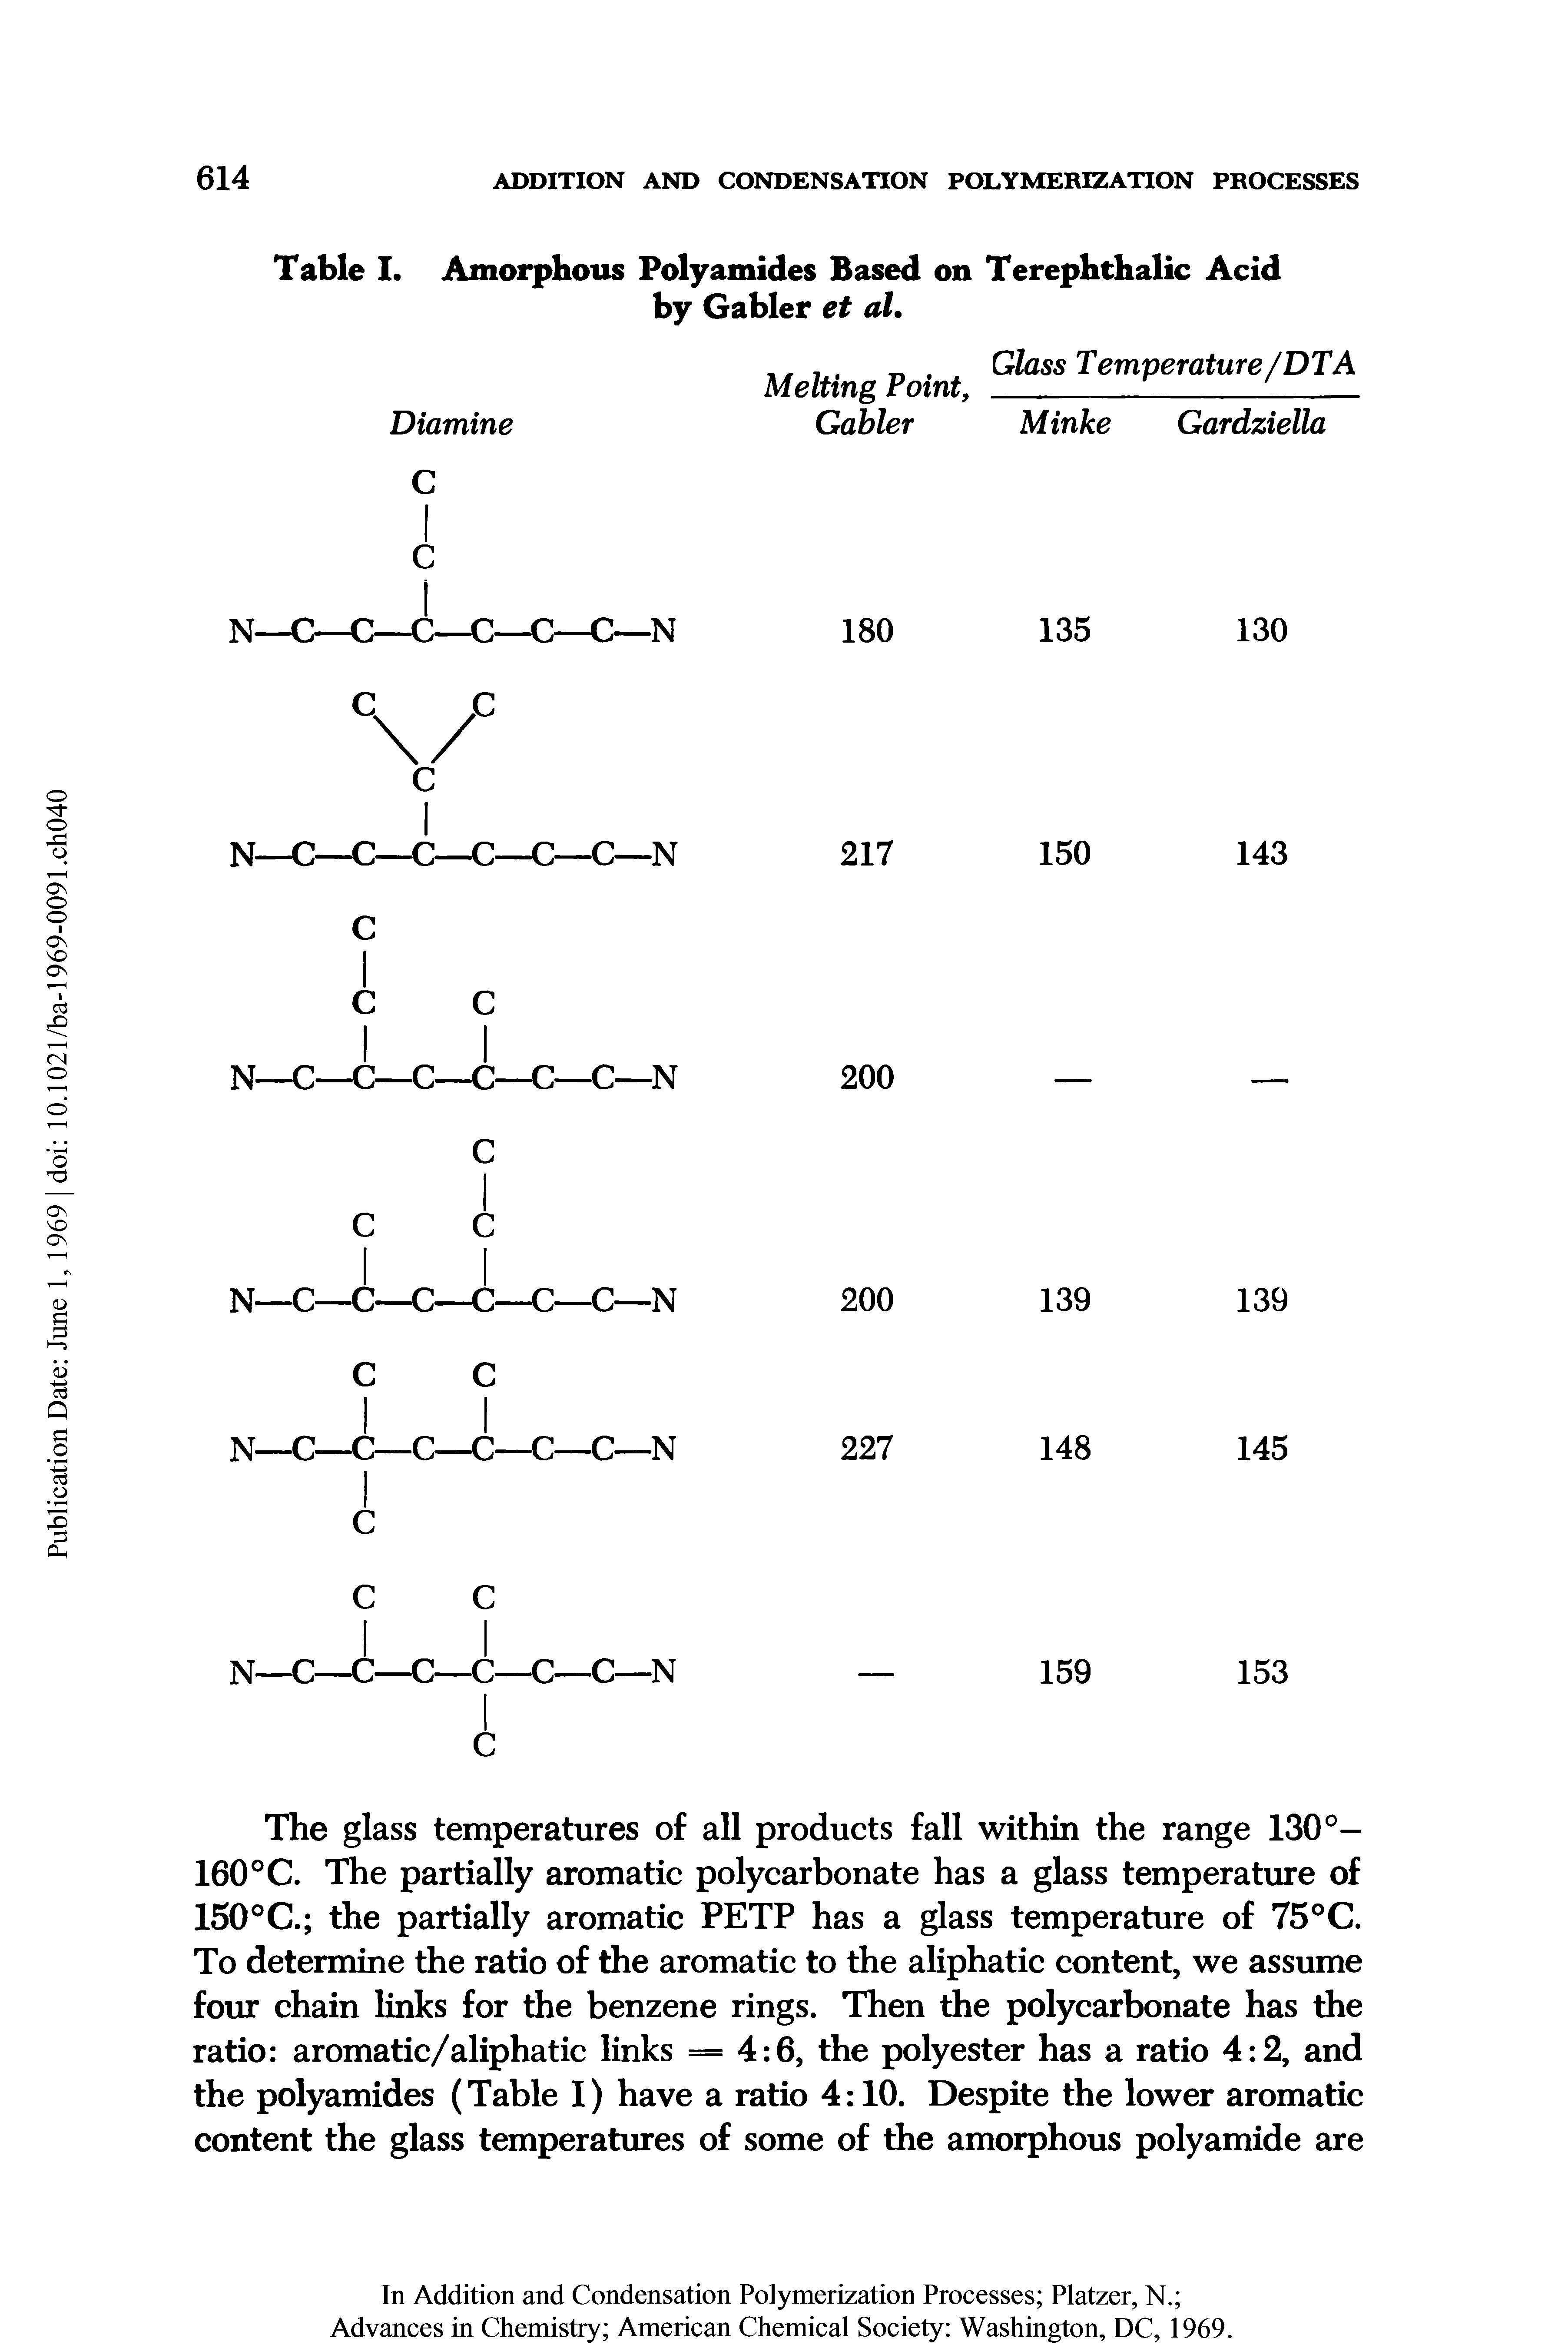 Table I. Amorphous Polyamides Based on Terephthalic Acid by Gabler et al.